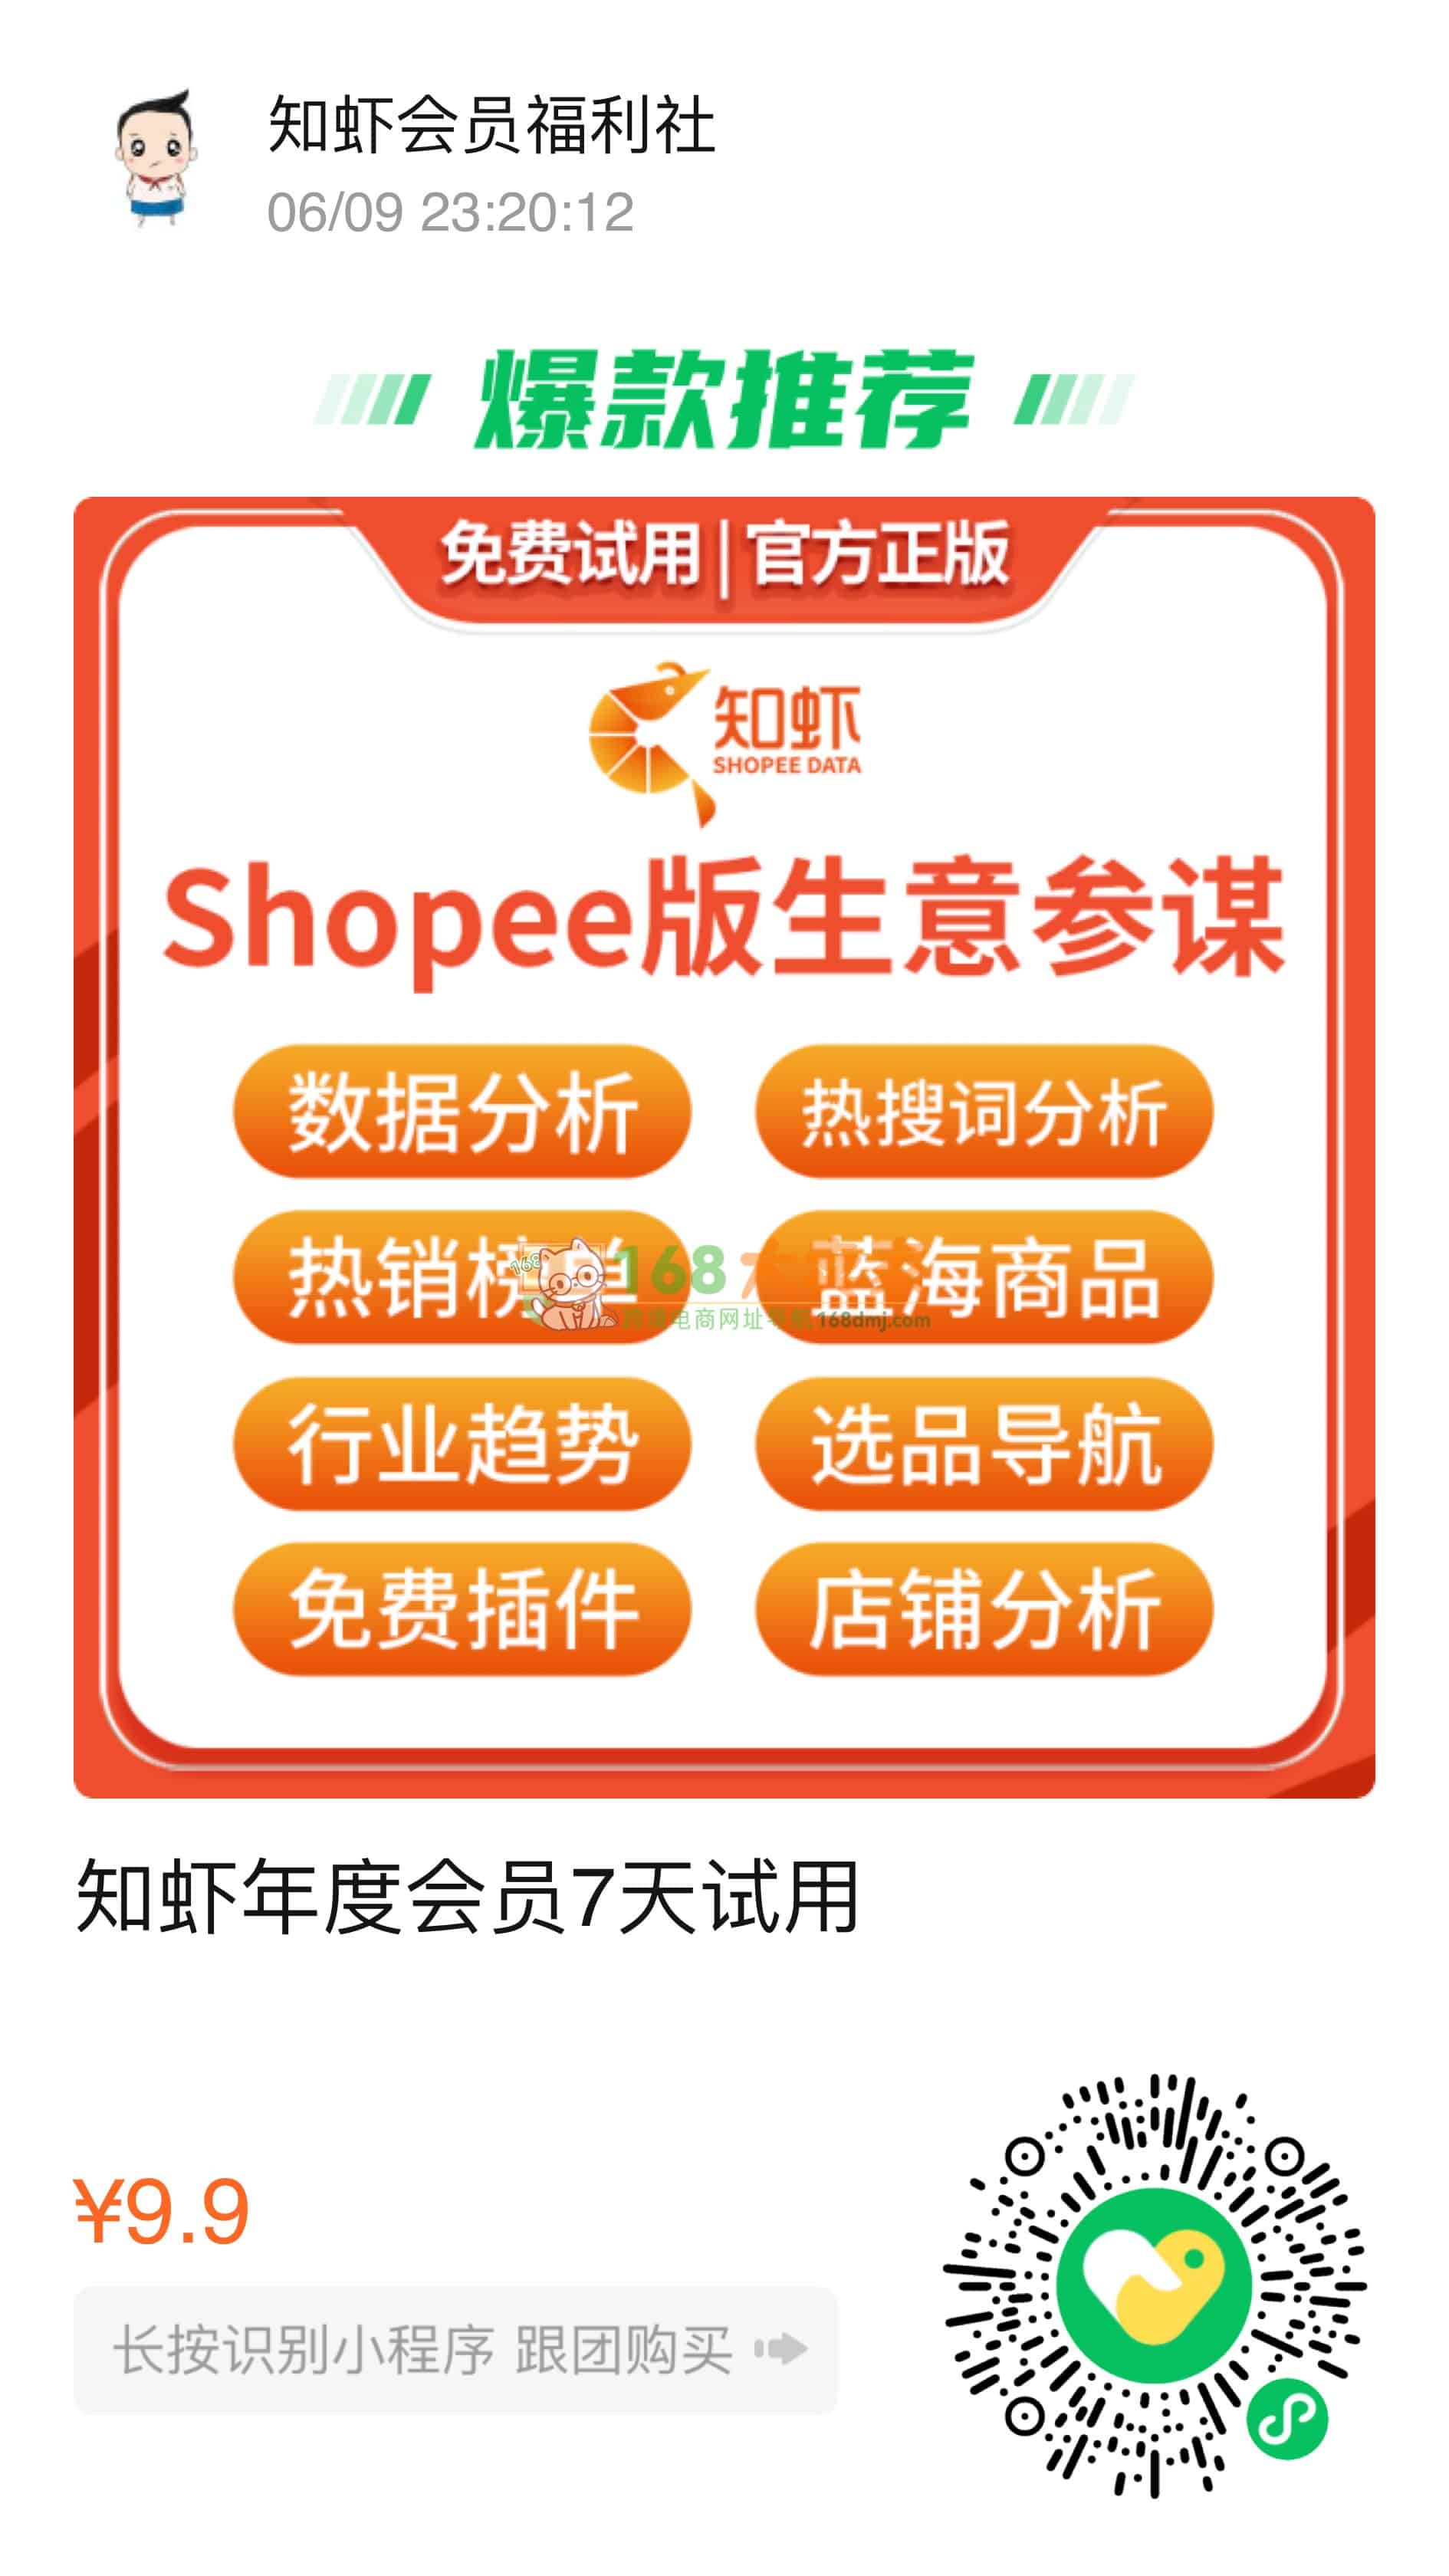 知虾年度会员7天试用,Shopee版生意参谋,东南亚跨境电商必备